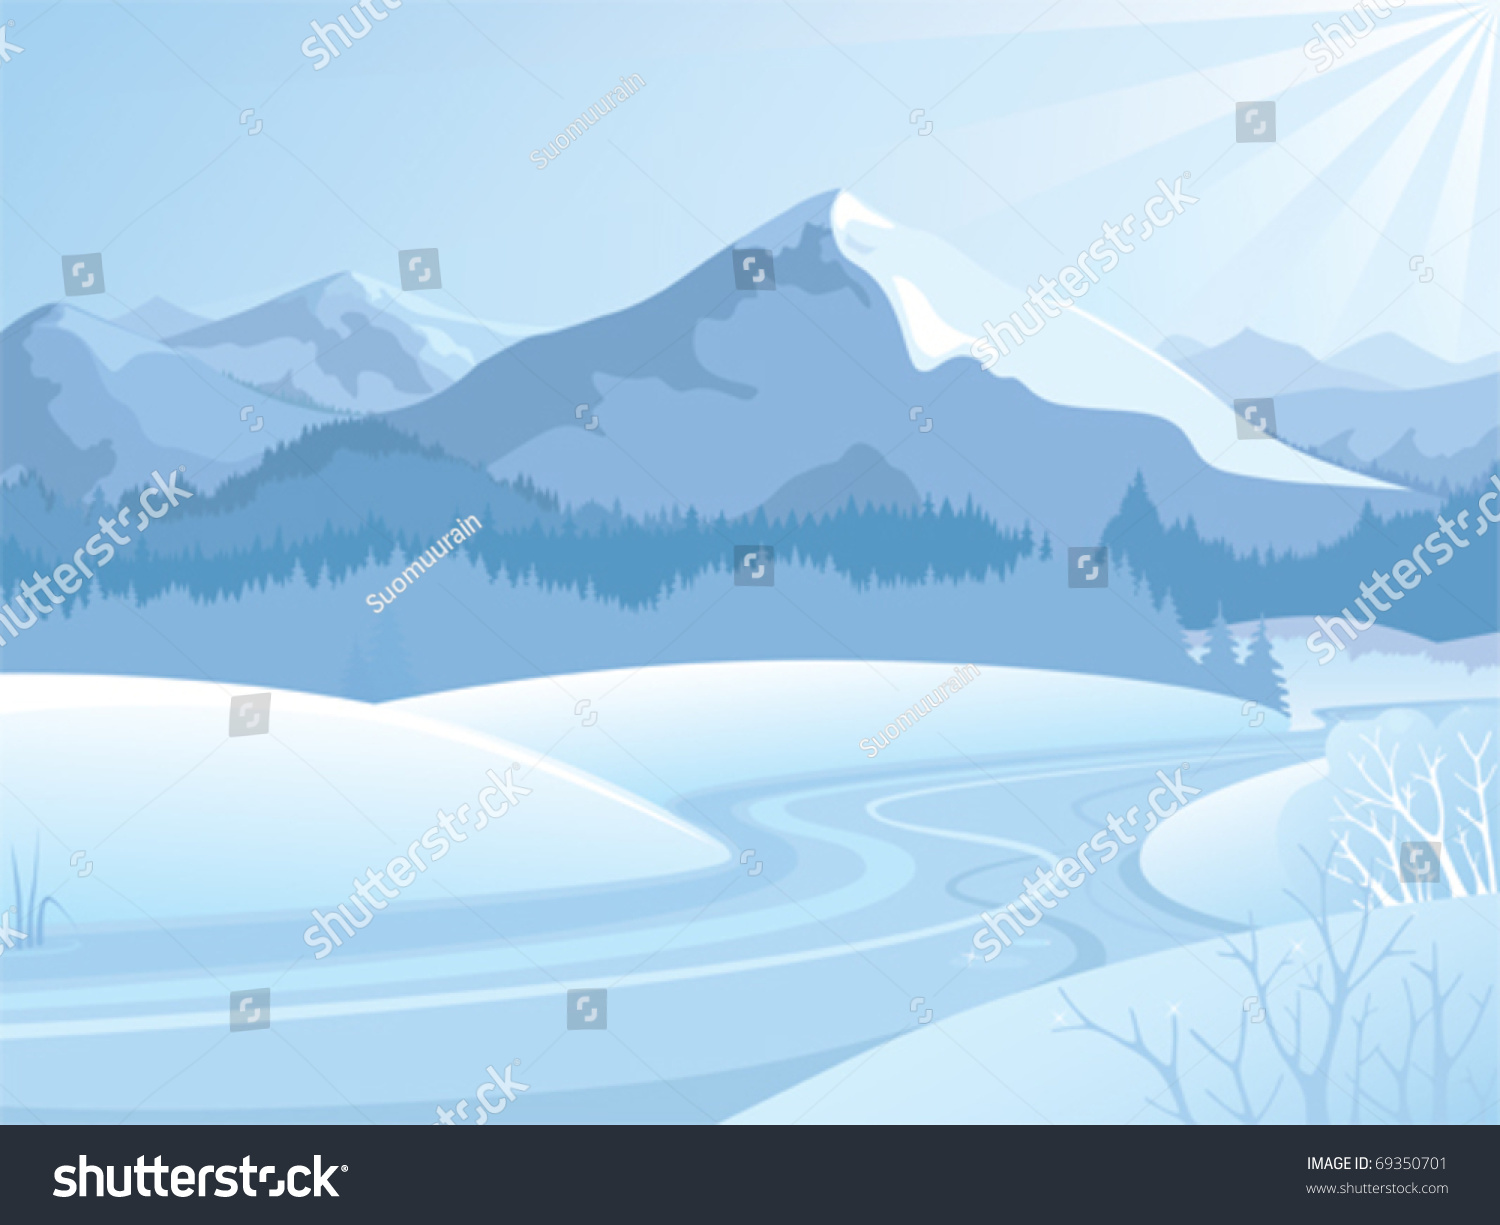 snowy landscape clipart - photo #7